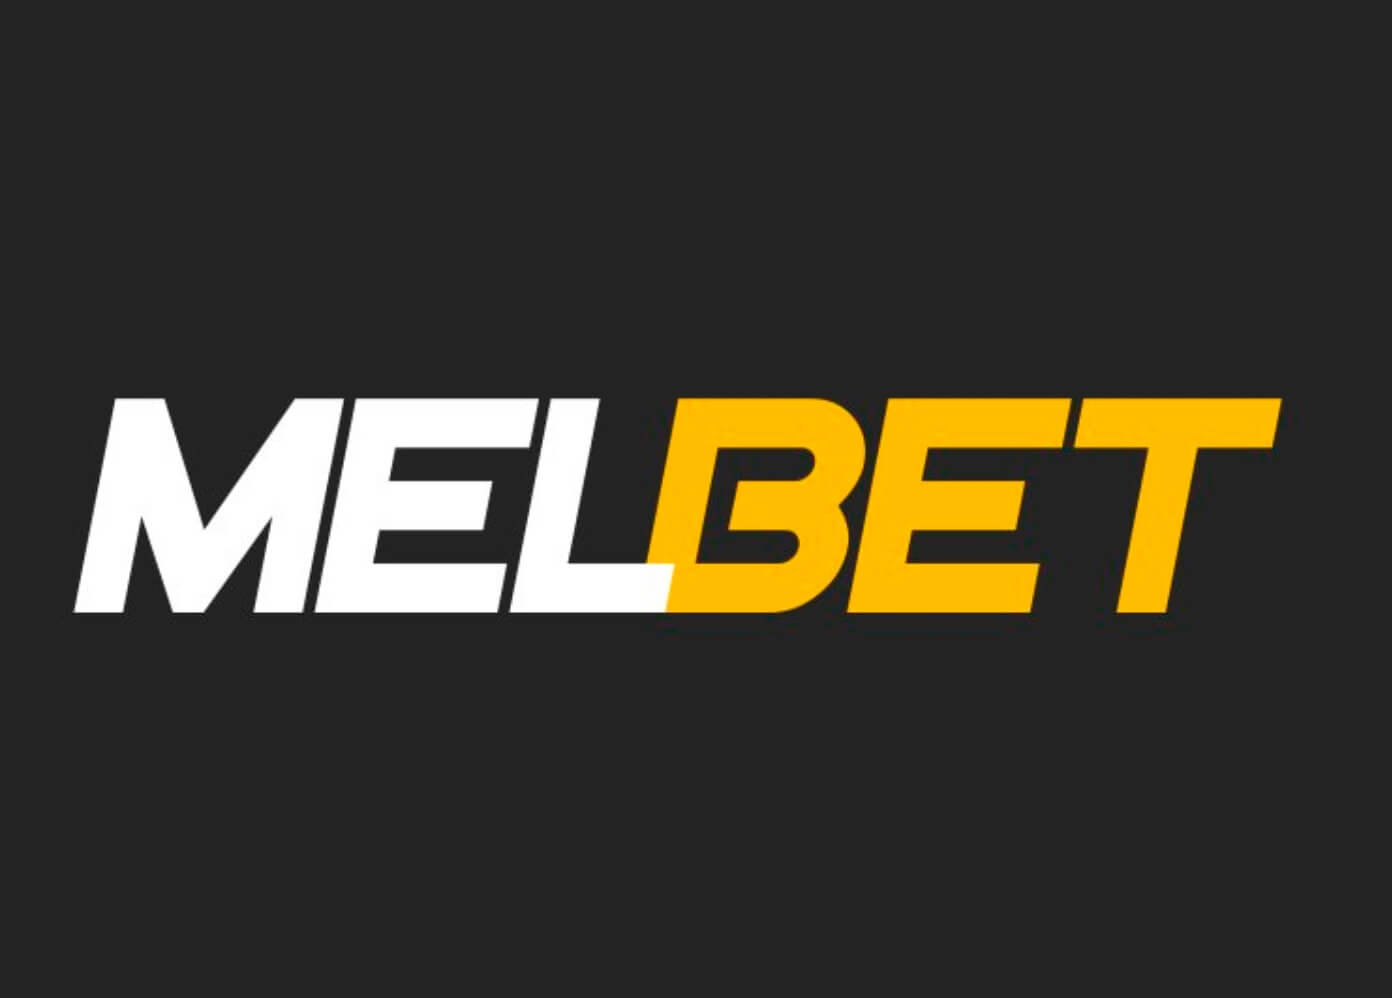 Melbet online bookmaker review